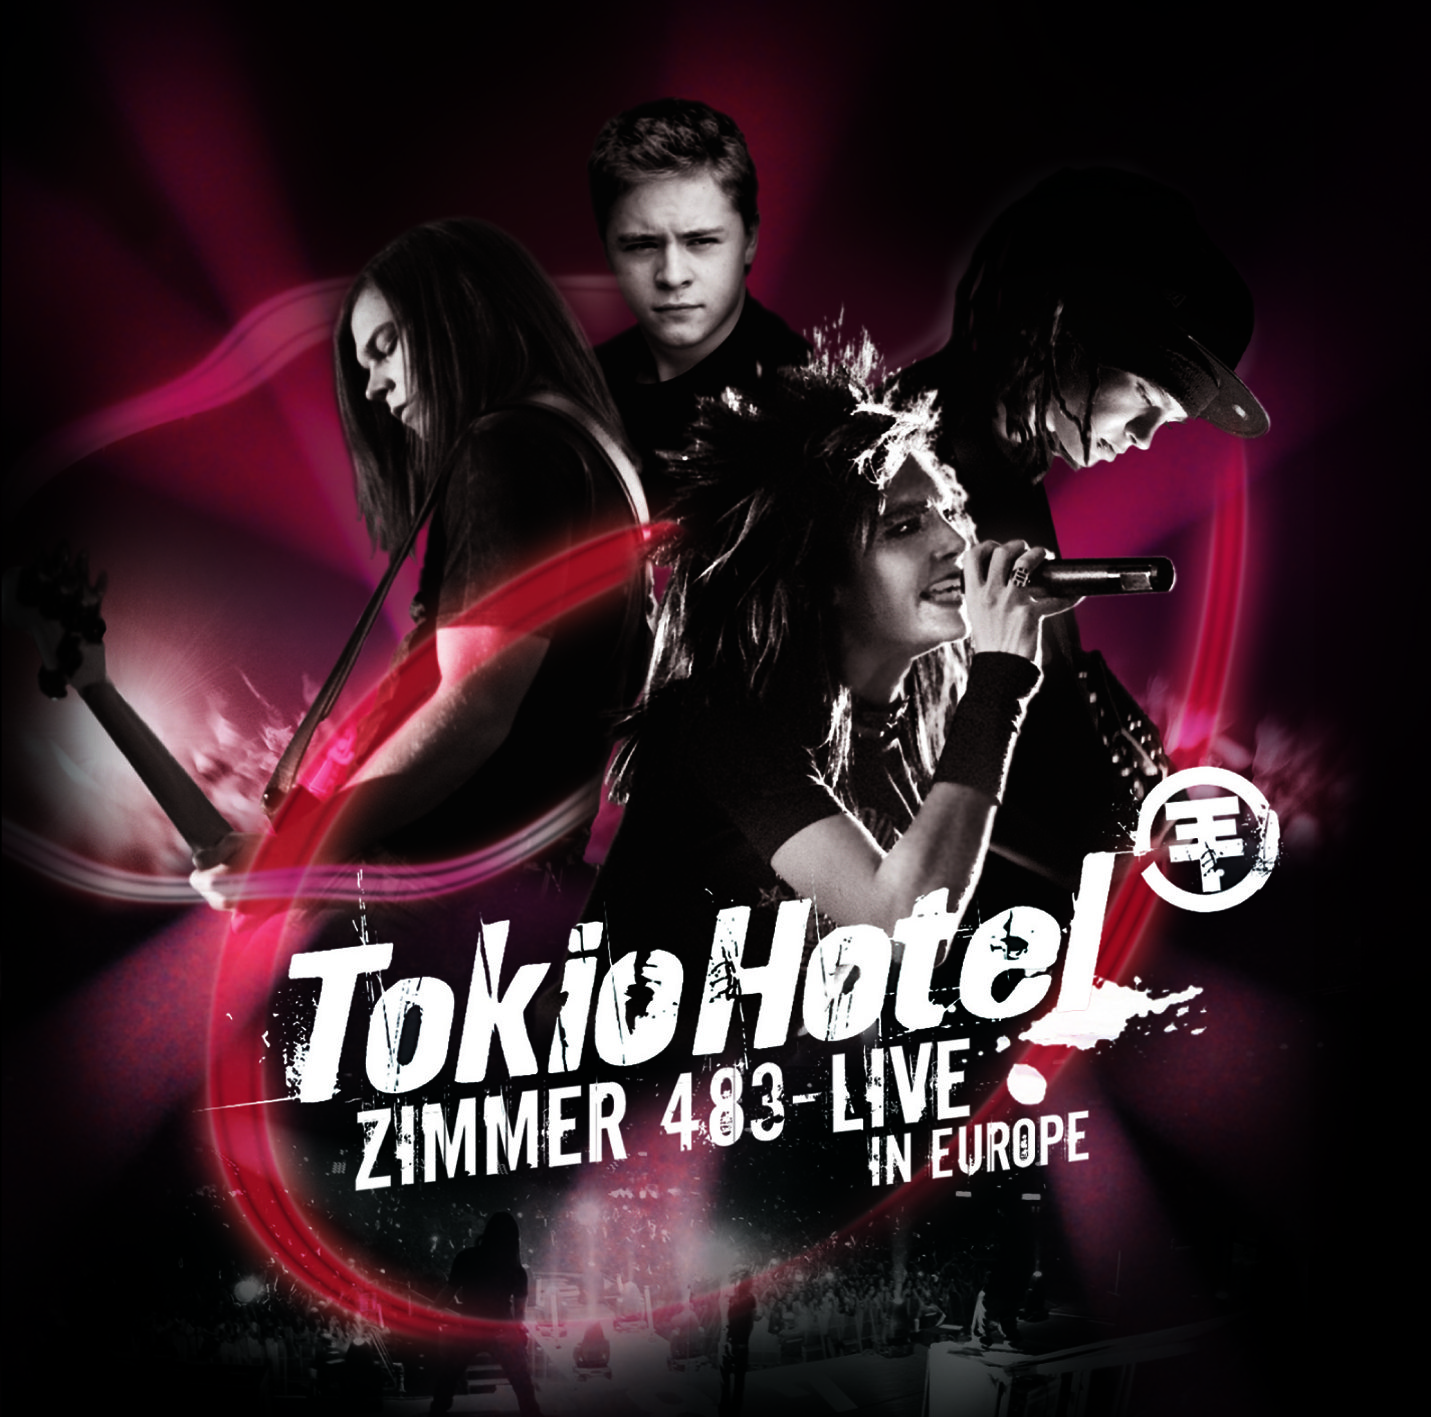 Tokio Hotel - Zimmer 483 LIVE in Europe